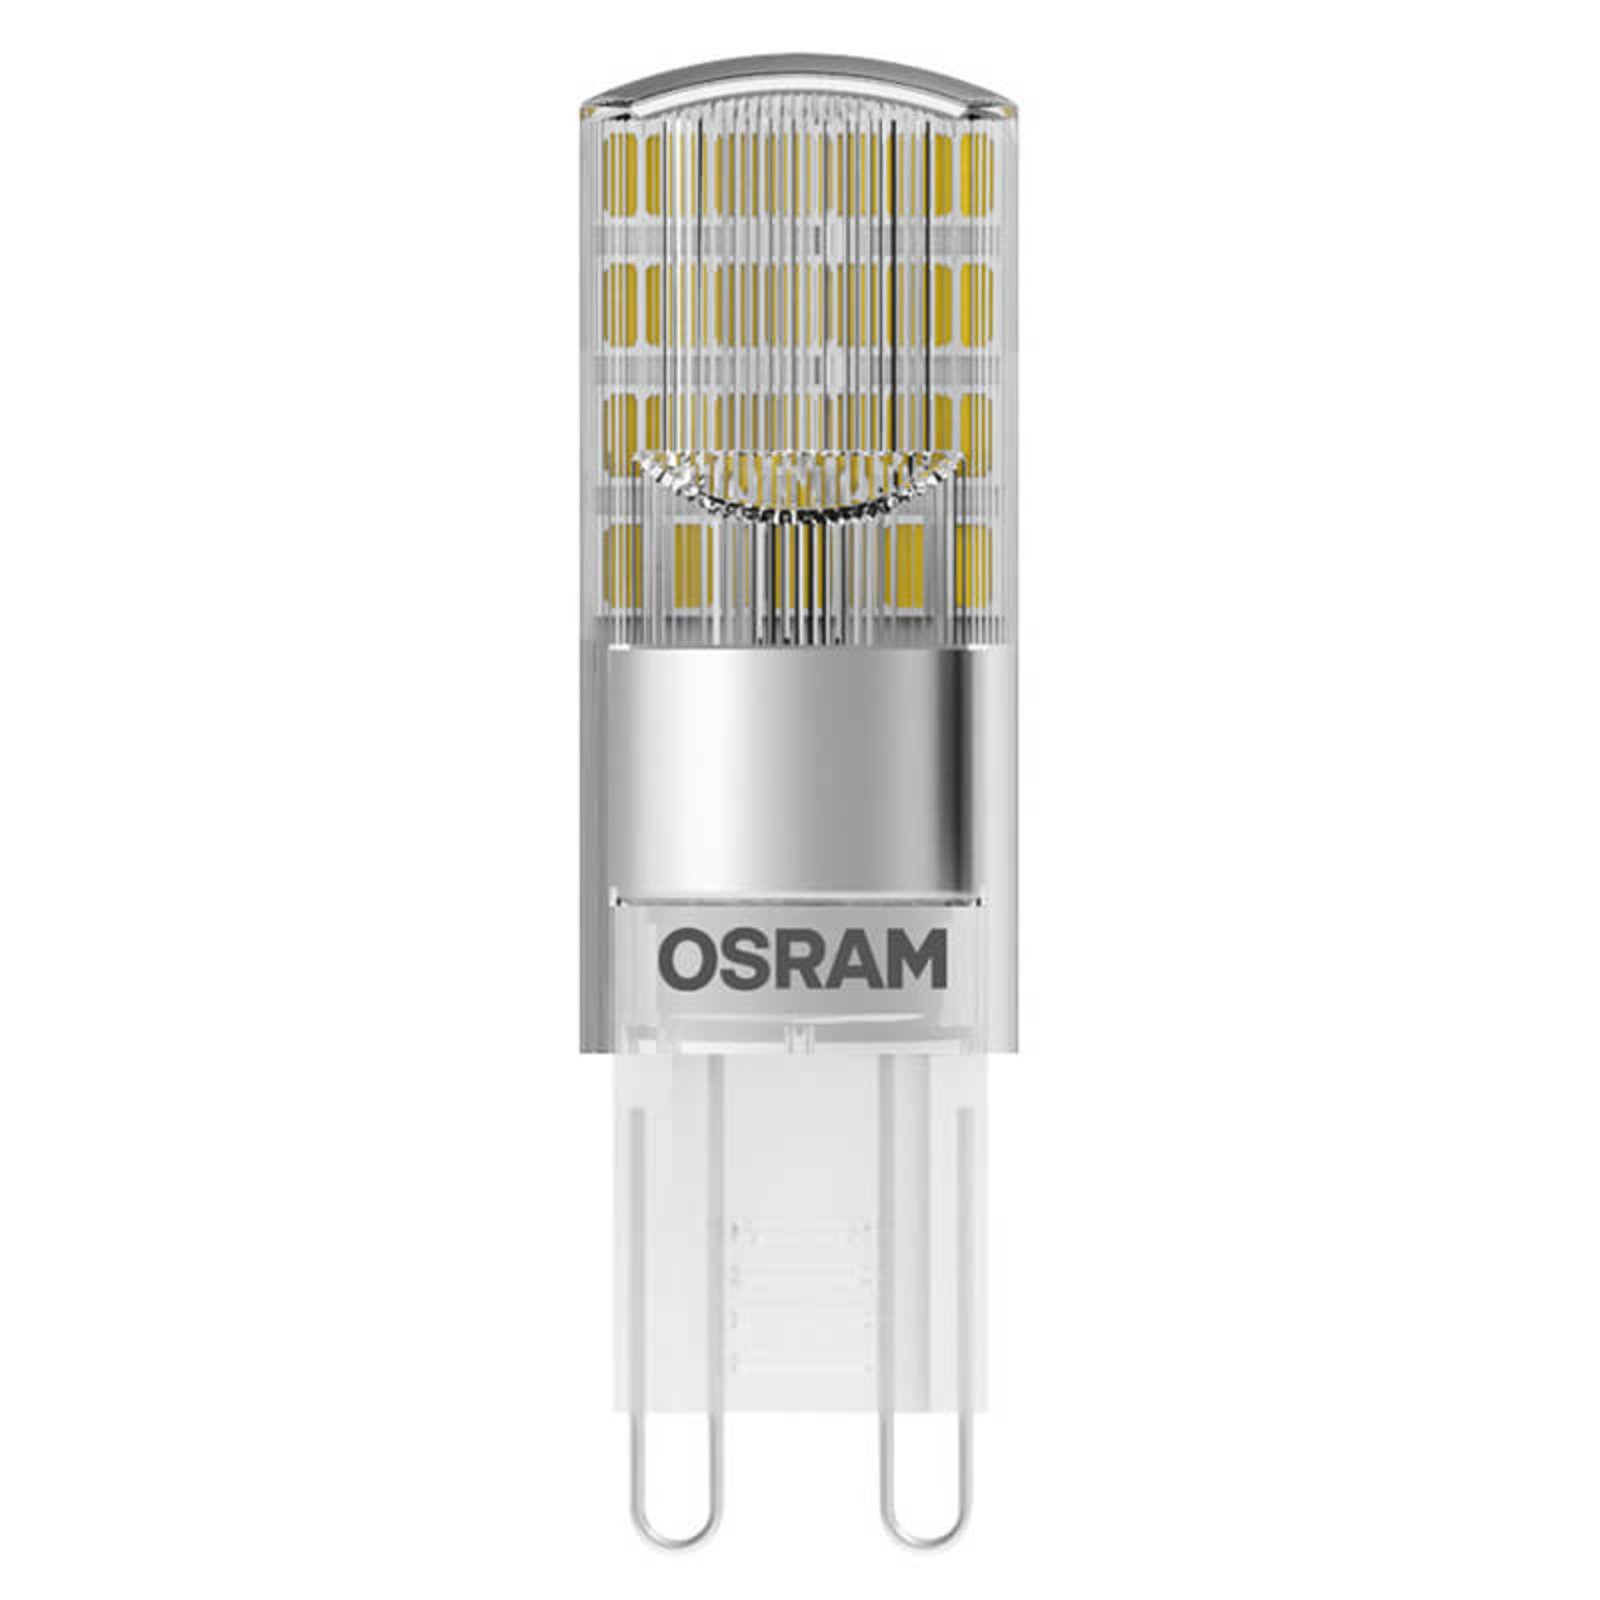 OSRAM LED-Stiftlampe G9 2,6W, warmweiß, 320 lm